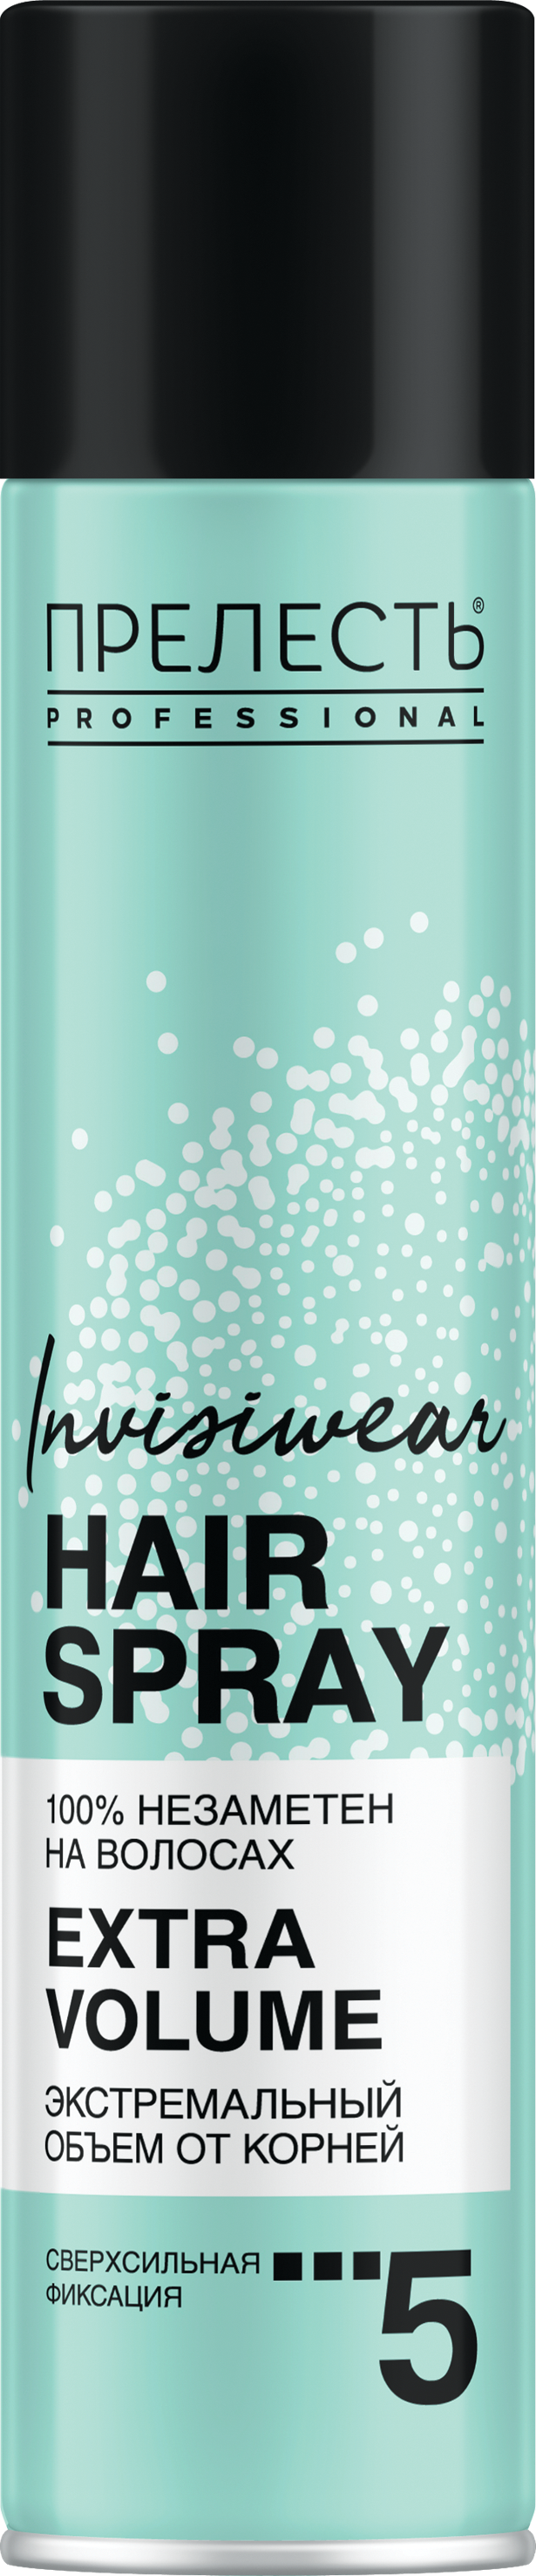 Лак для волос Прелесть Invisiwear Невесомый, экстремальный объем, 300 мл мусс для волос прелесть cильная фиксация 160 мл